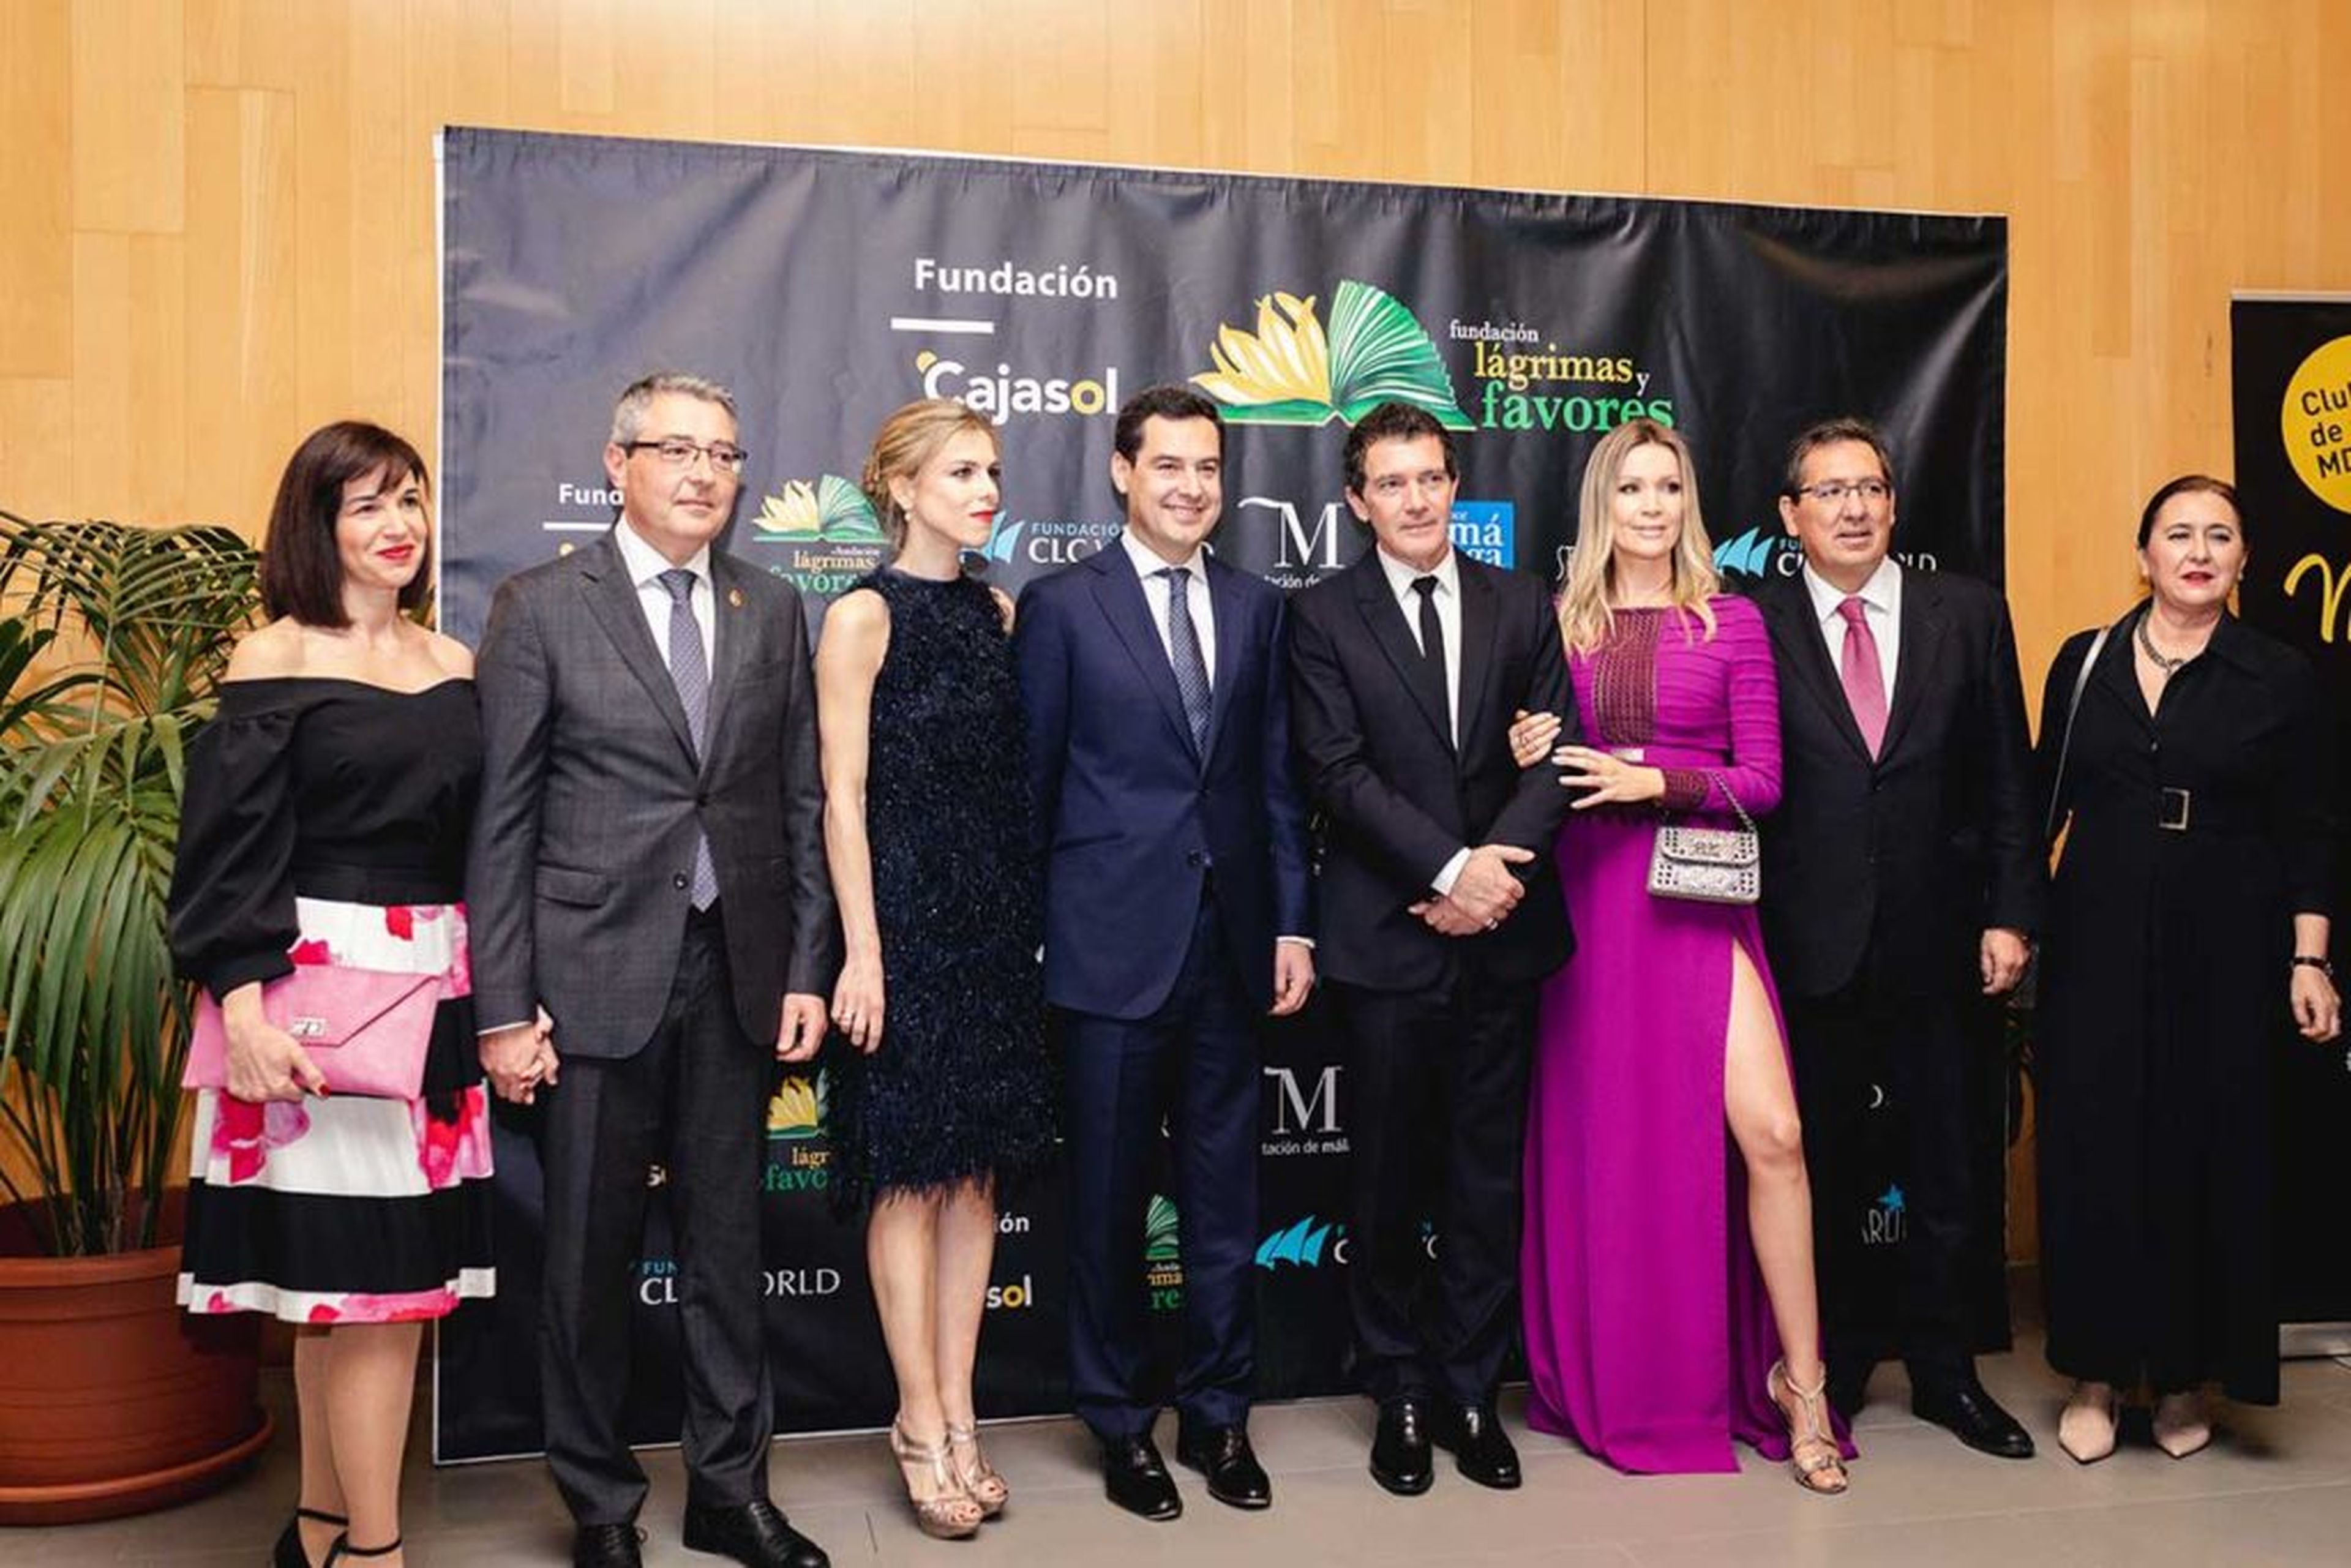 Antonio Banderas posa junto a otras personalidades en un evento de su fundación lágrimas y favores